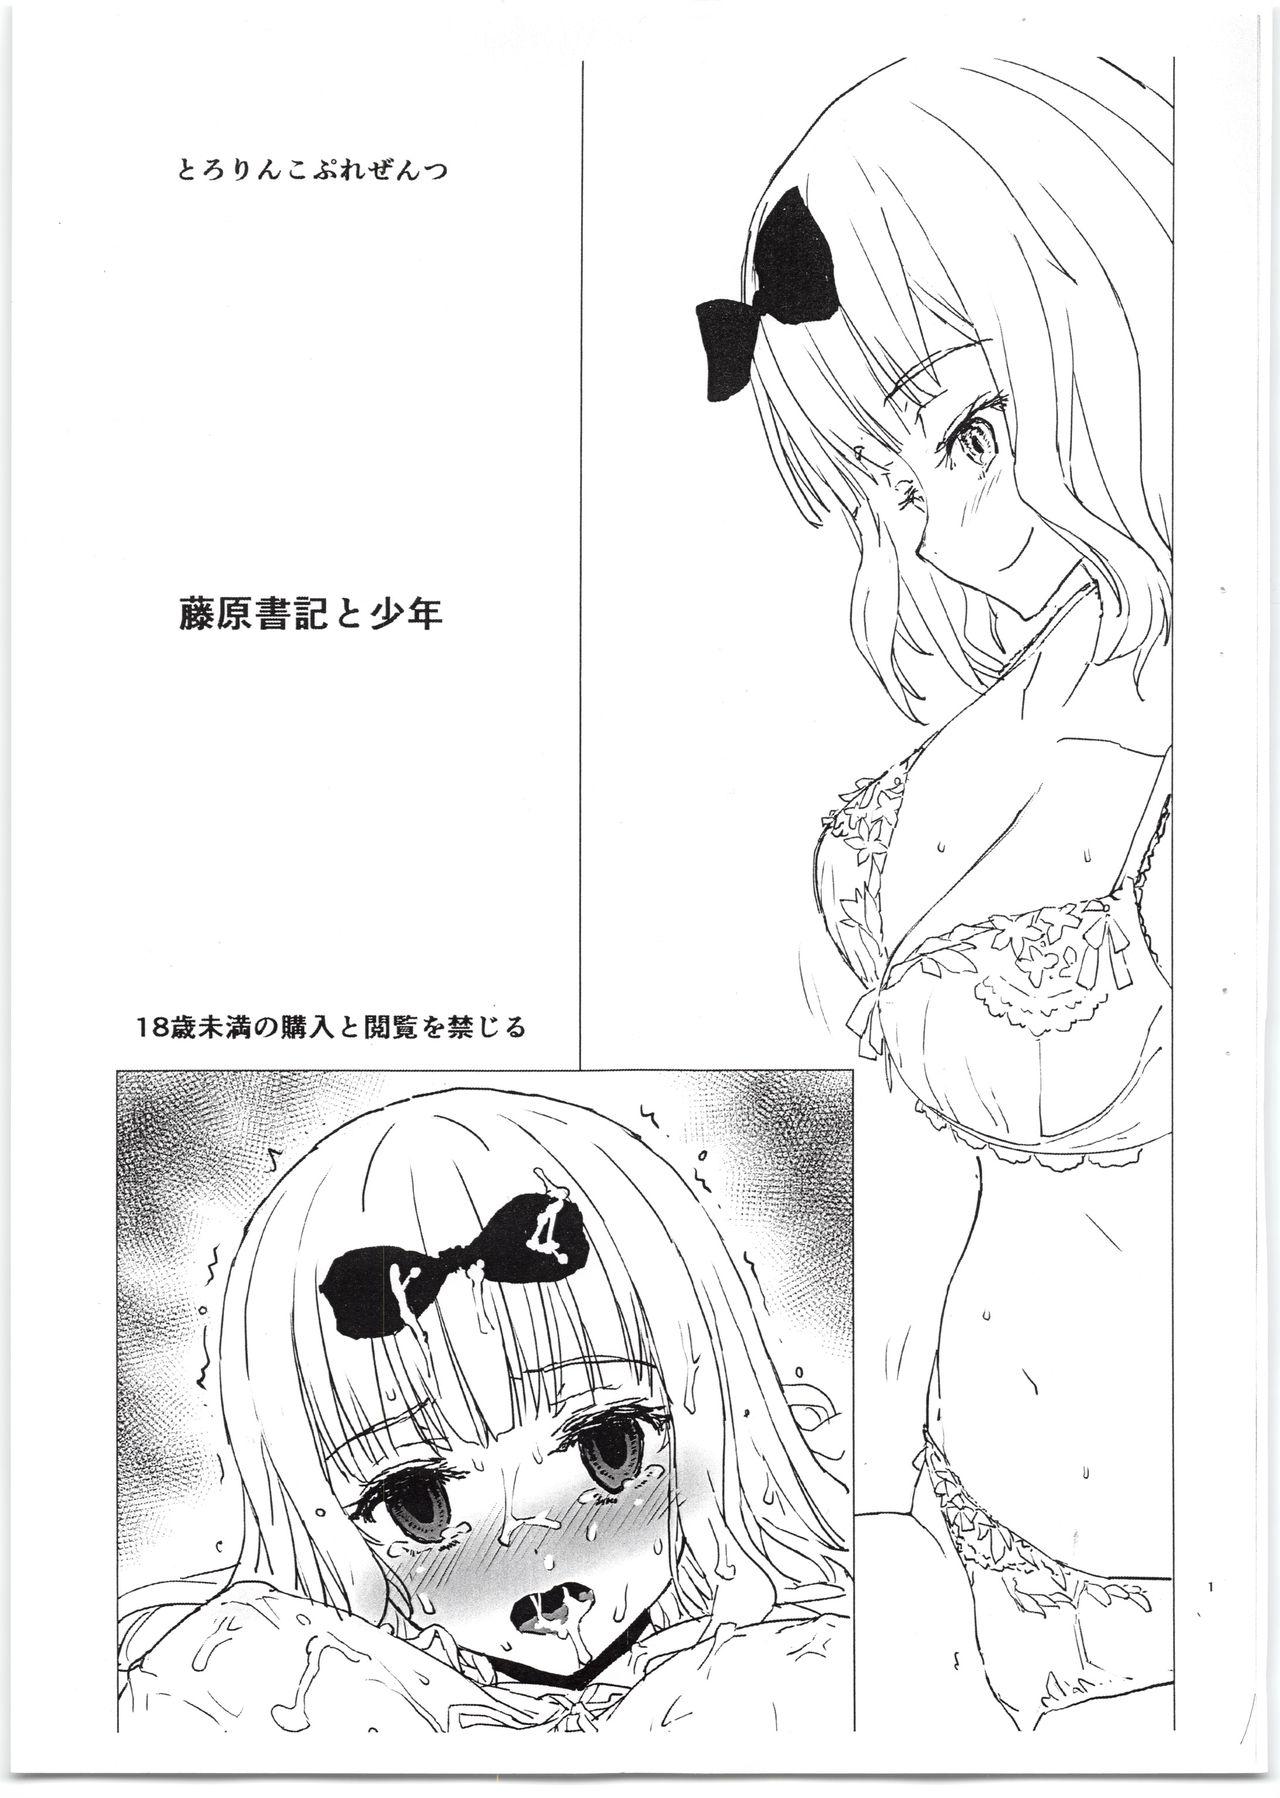 18 Year Old Porn Fujiwara-shoki to Shounen - Kaguya sama wa kokurasetai Cavala - Page 1